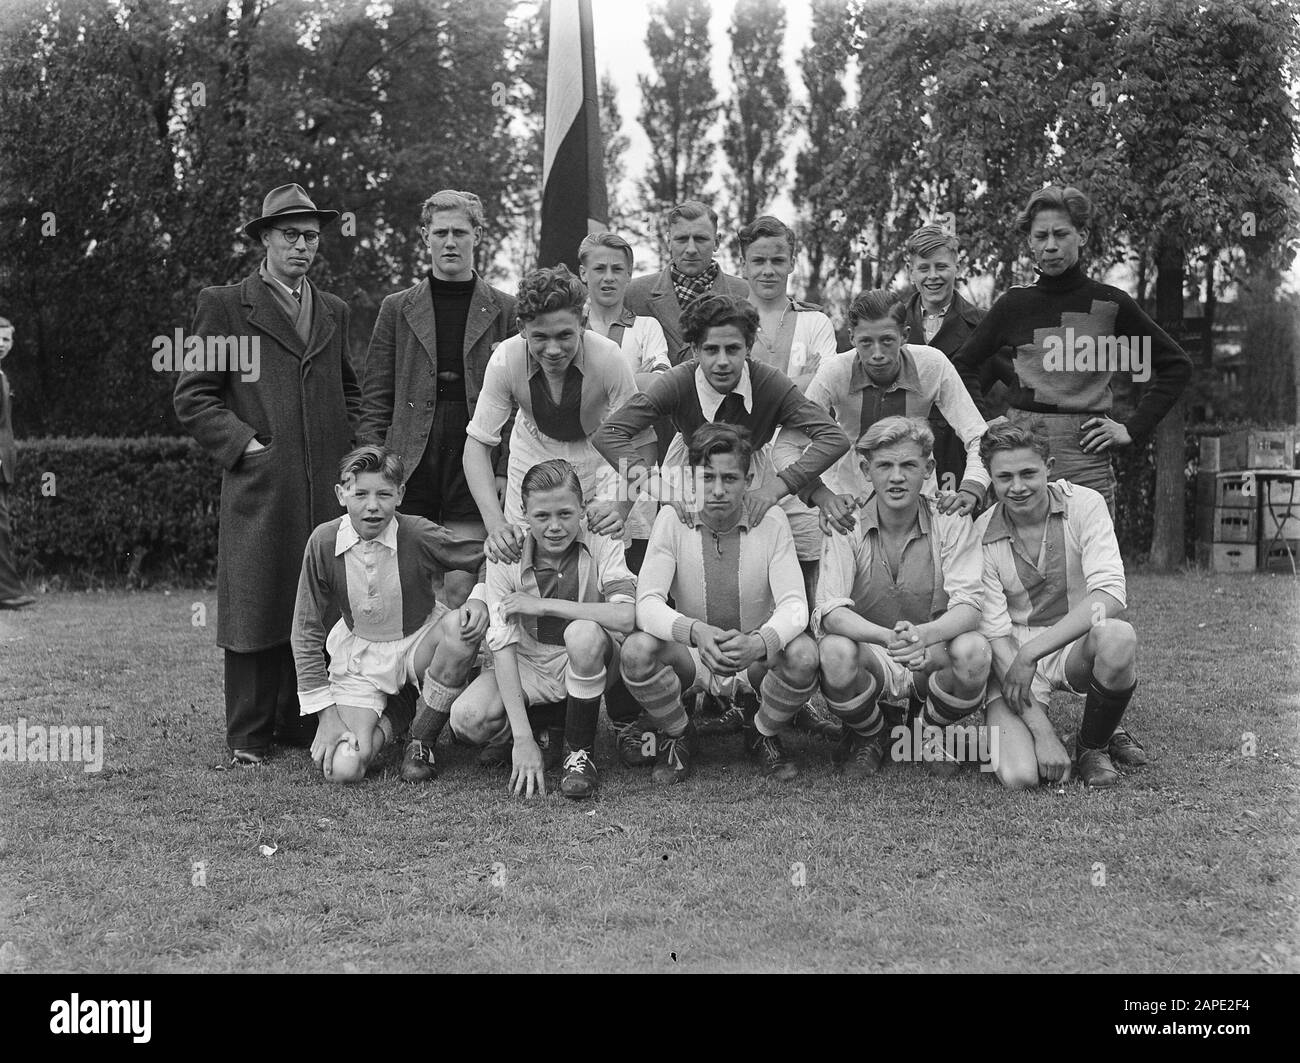 11-dozen aspirants Blue-white tournament football Date: May 2, 1948 Keywords: aspirants, tournaments Stock Photo